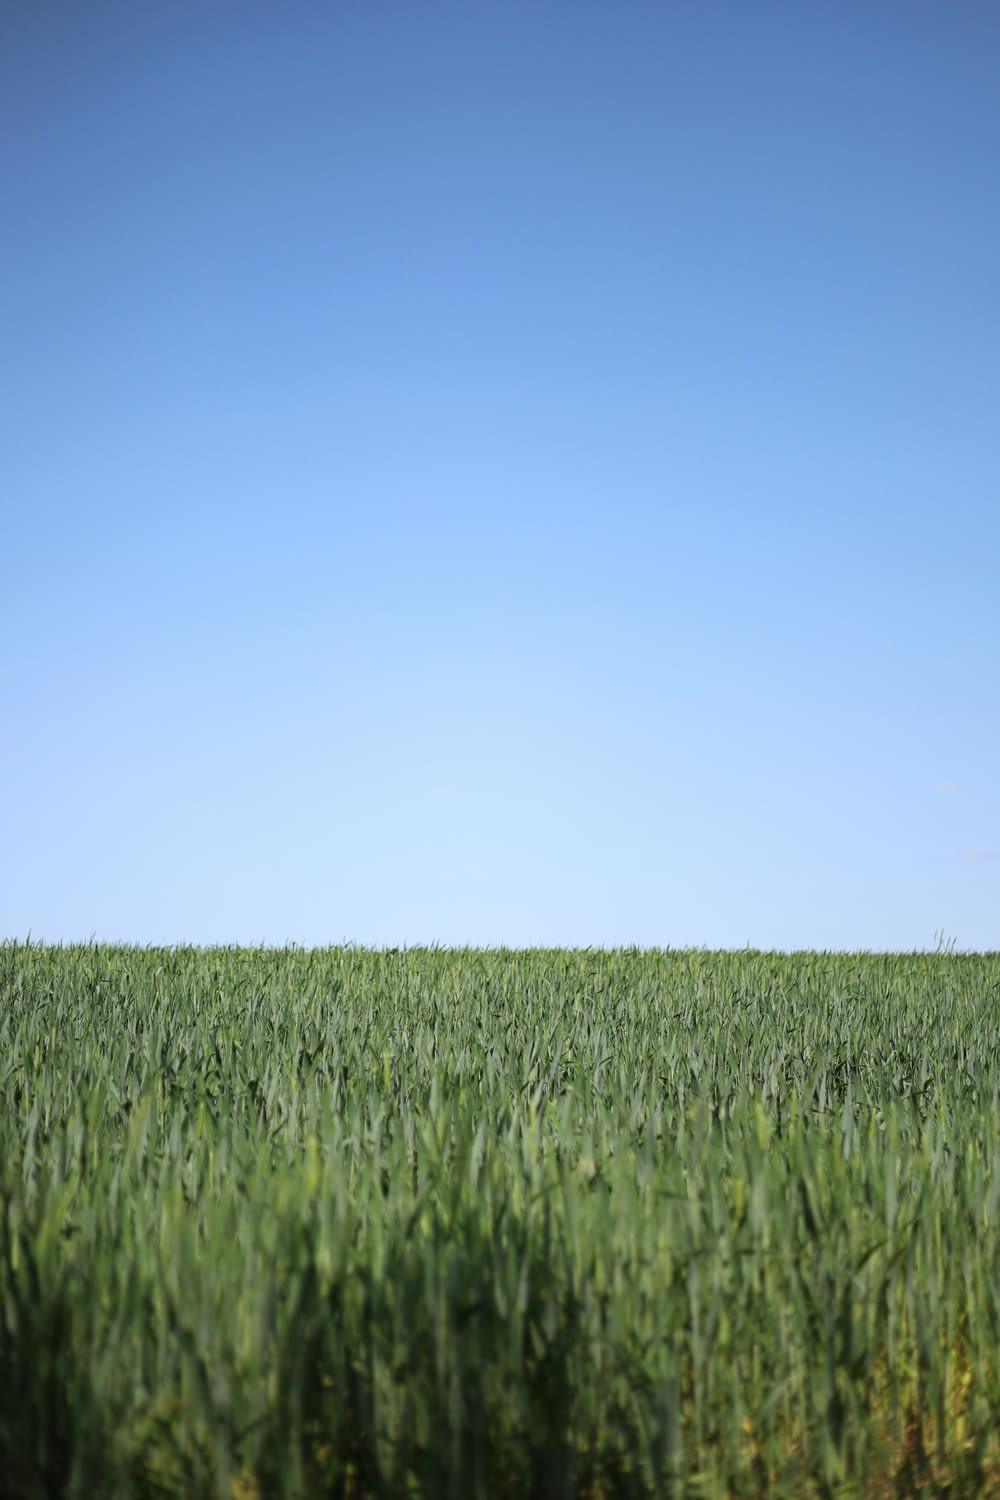 a field of green grass under a blue sky